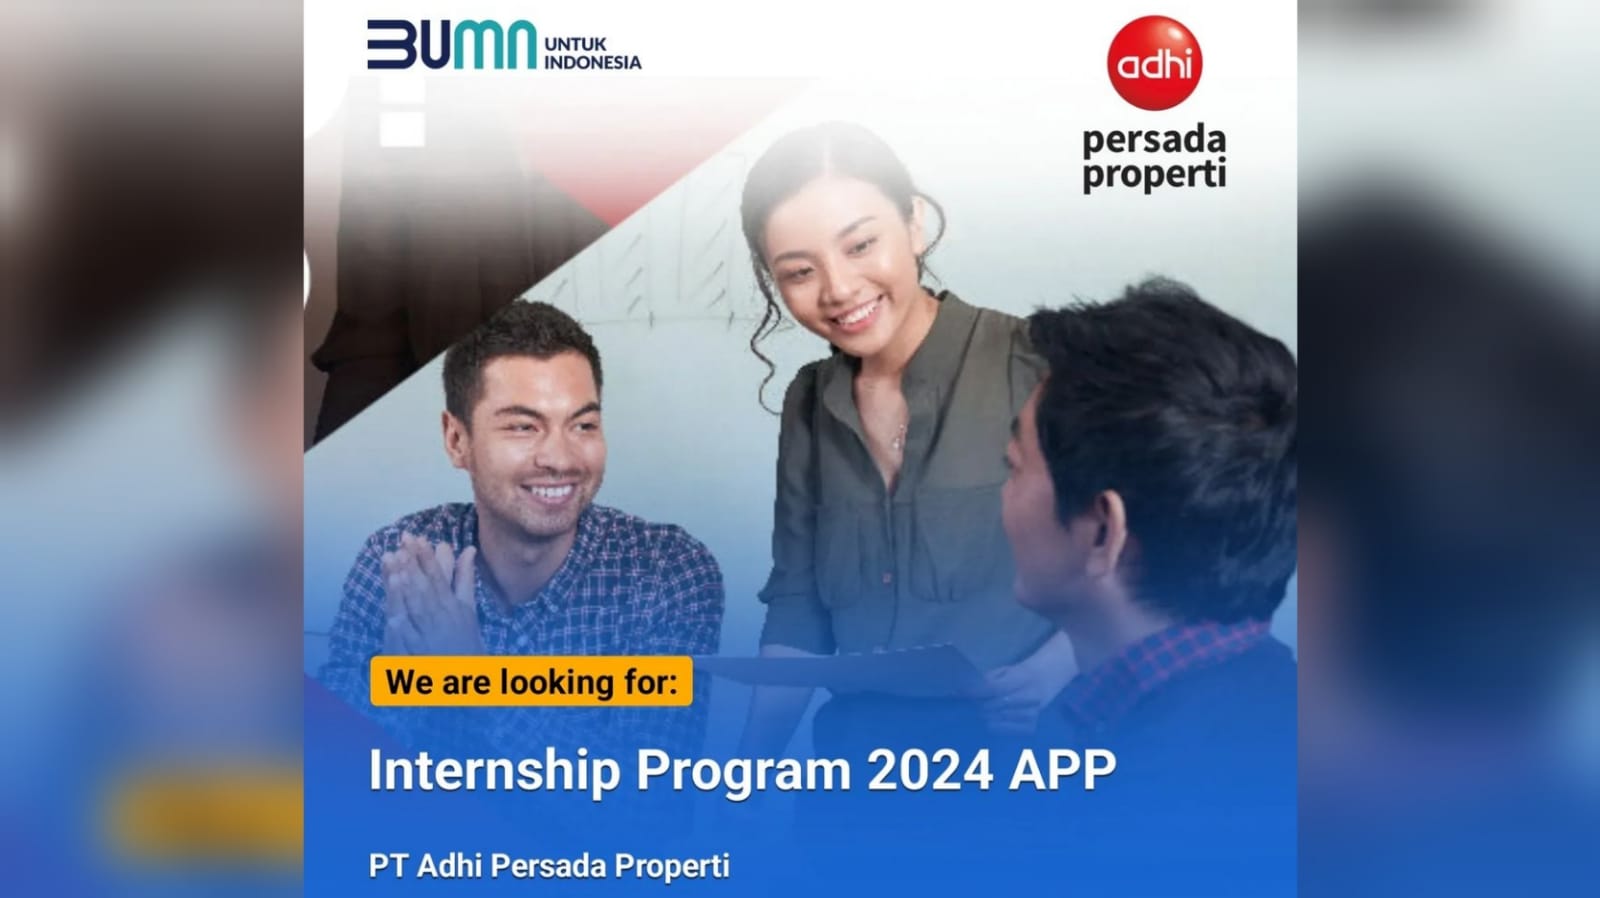 Lowongan Kerja Perusahaan BUMN PT Adhi Persada Properti Melalui Internship Program 2024 APP